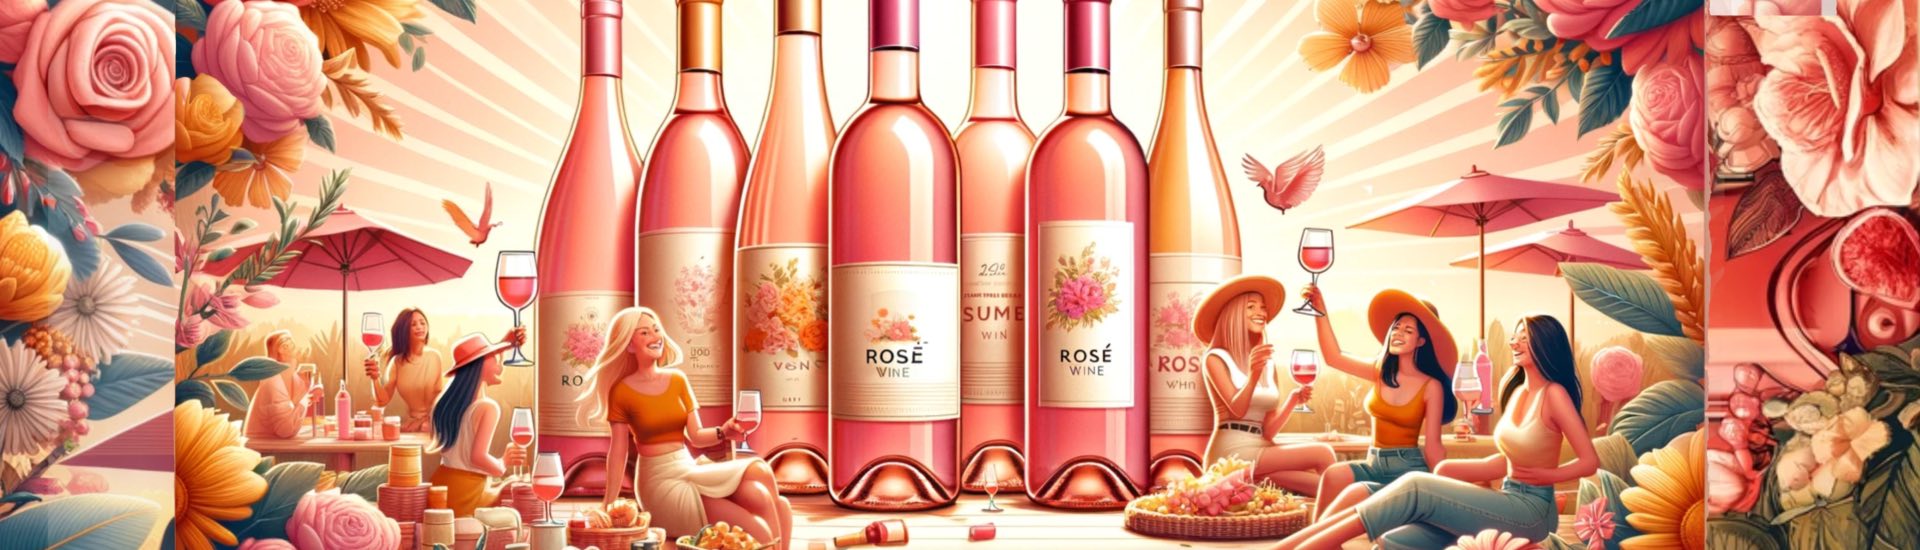 Unsere Roseauswahl für Sie - taucen Sie ein in die Vielfalt der Weine